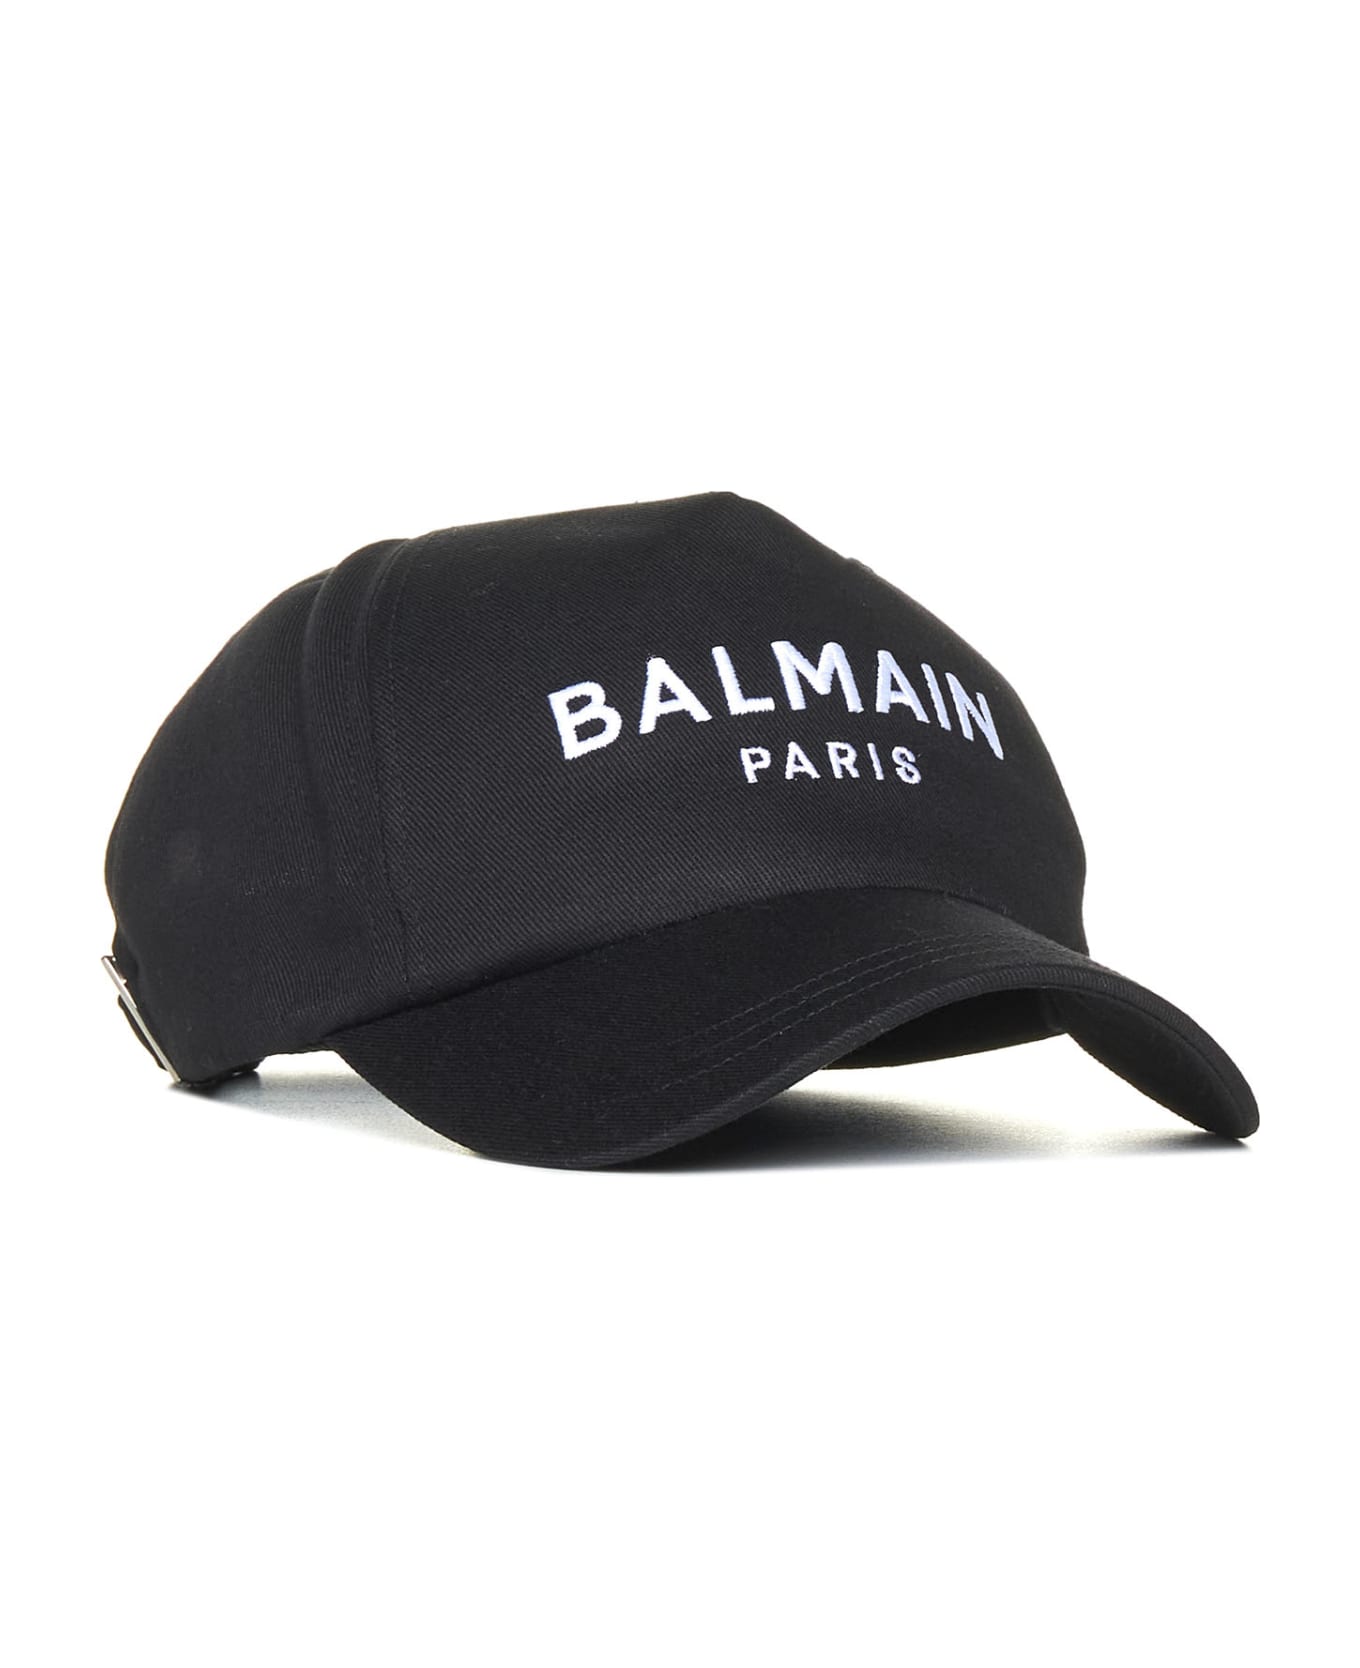 Balmain Logo Embroidery Baseball Cap - Noir/blanc